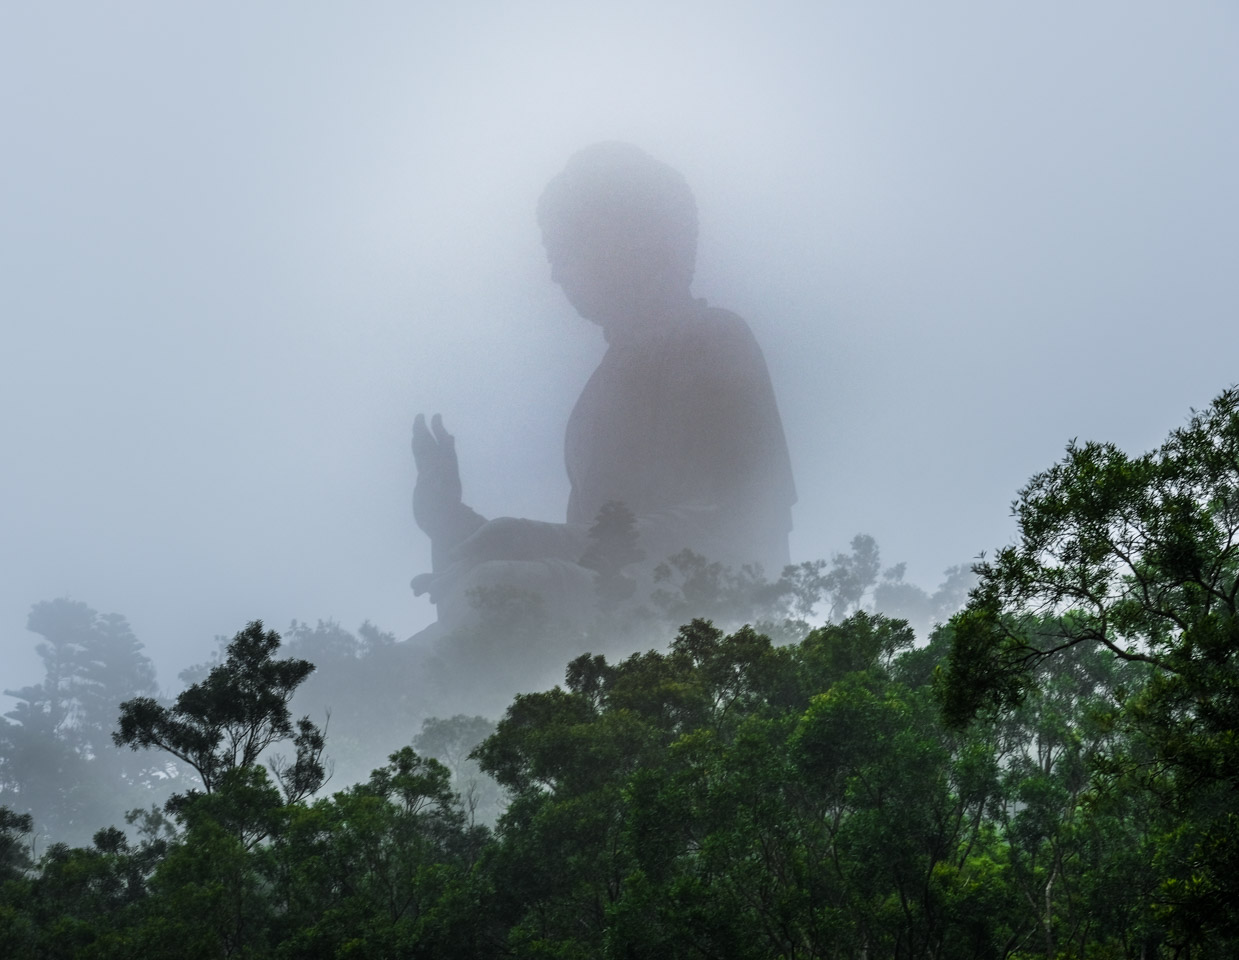 The Tian Tan Buddha in the fog